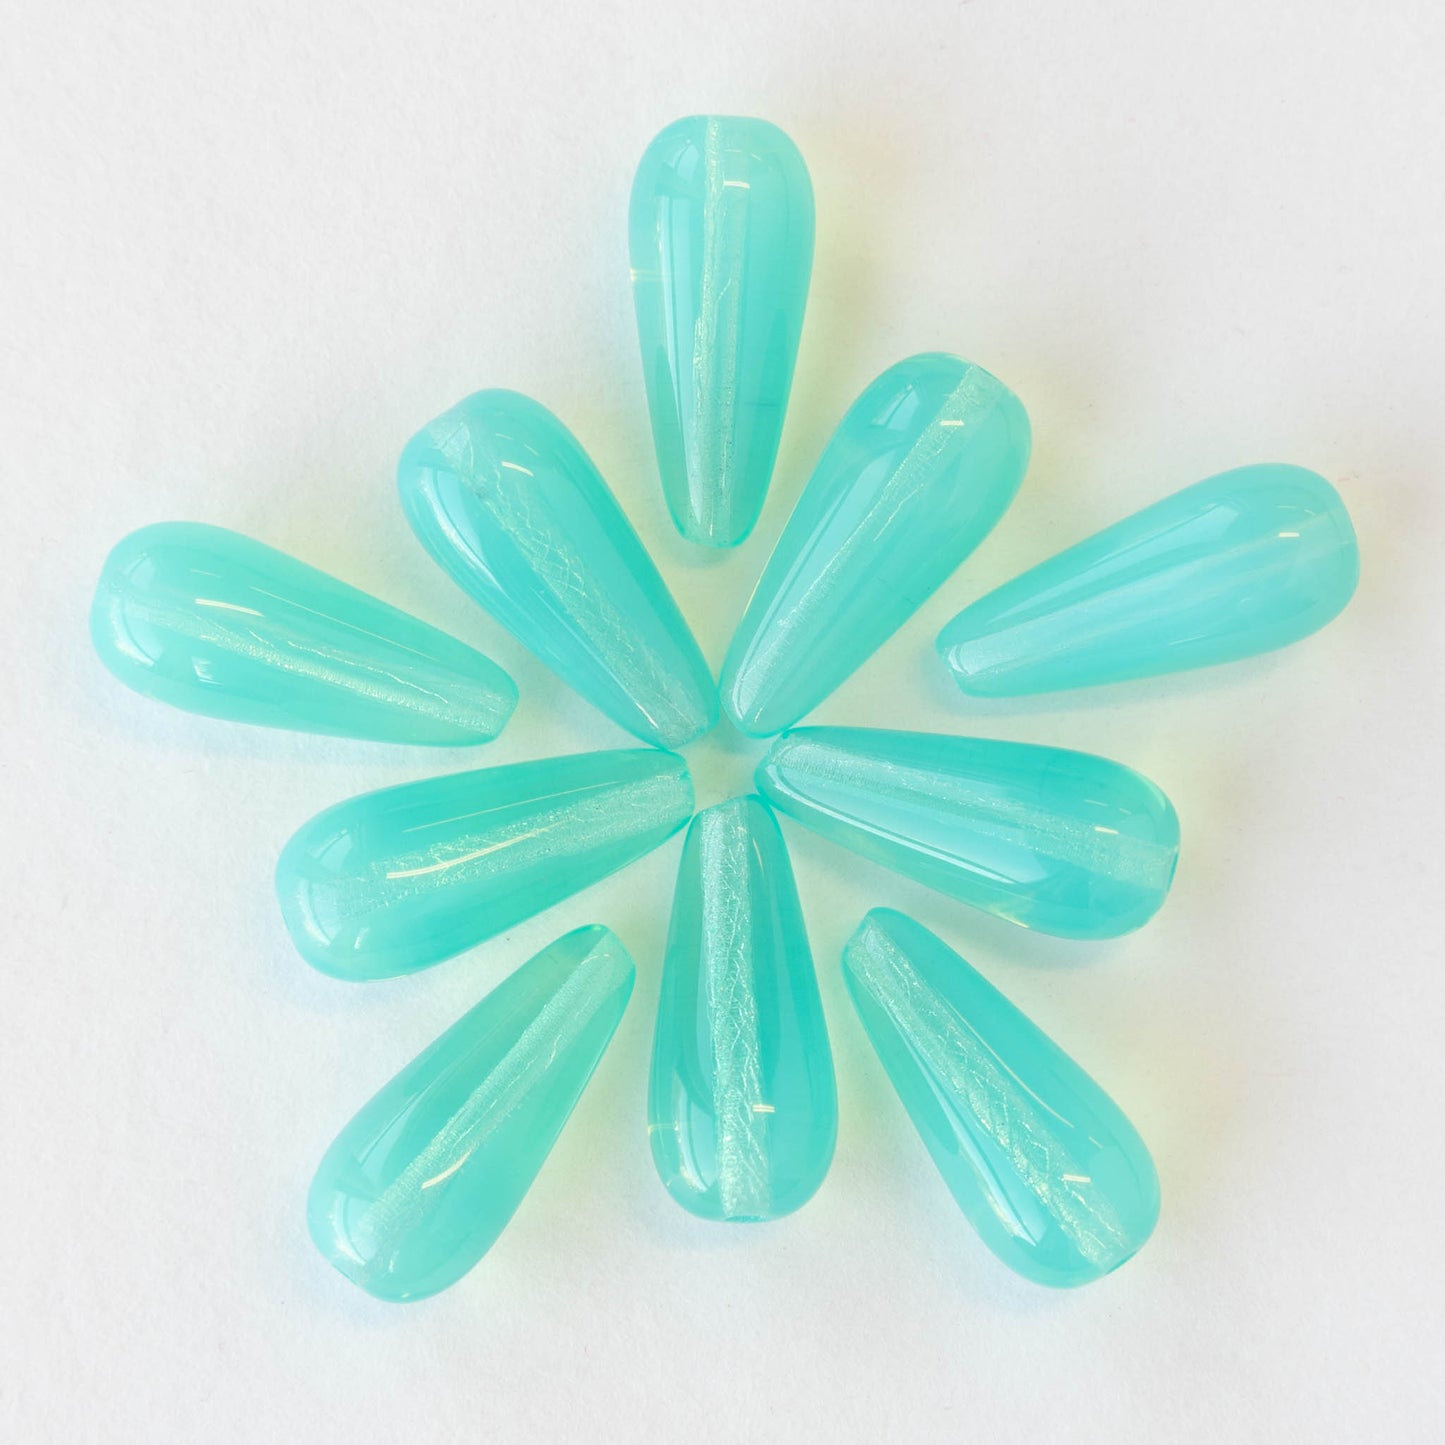 9x20mm Glass Teardrops - Seafoam Opaline - 20 beads